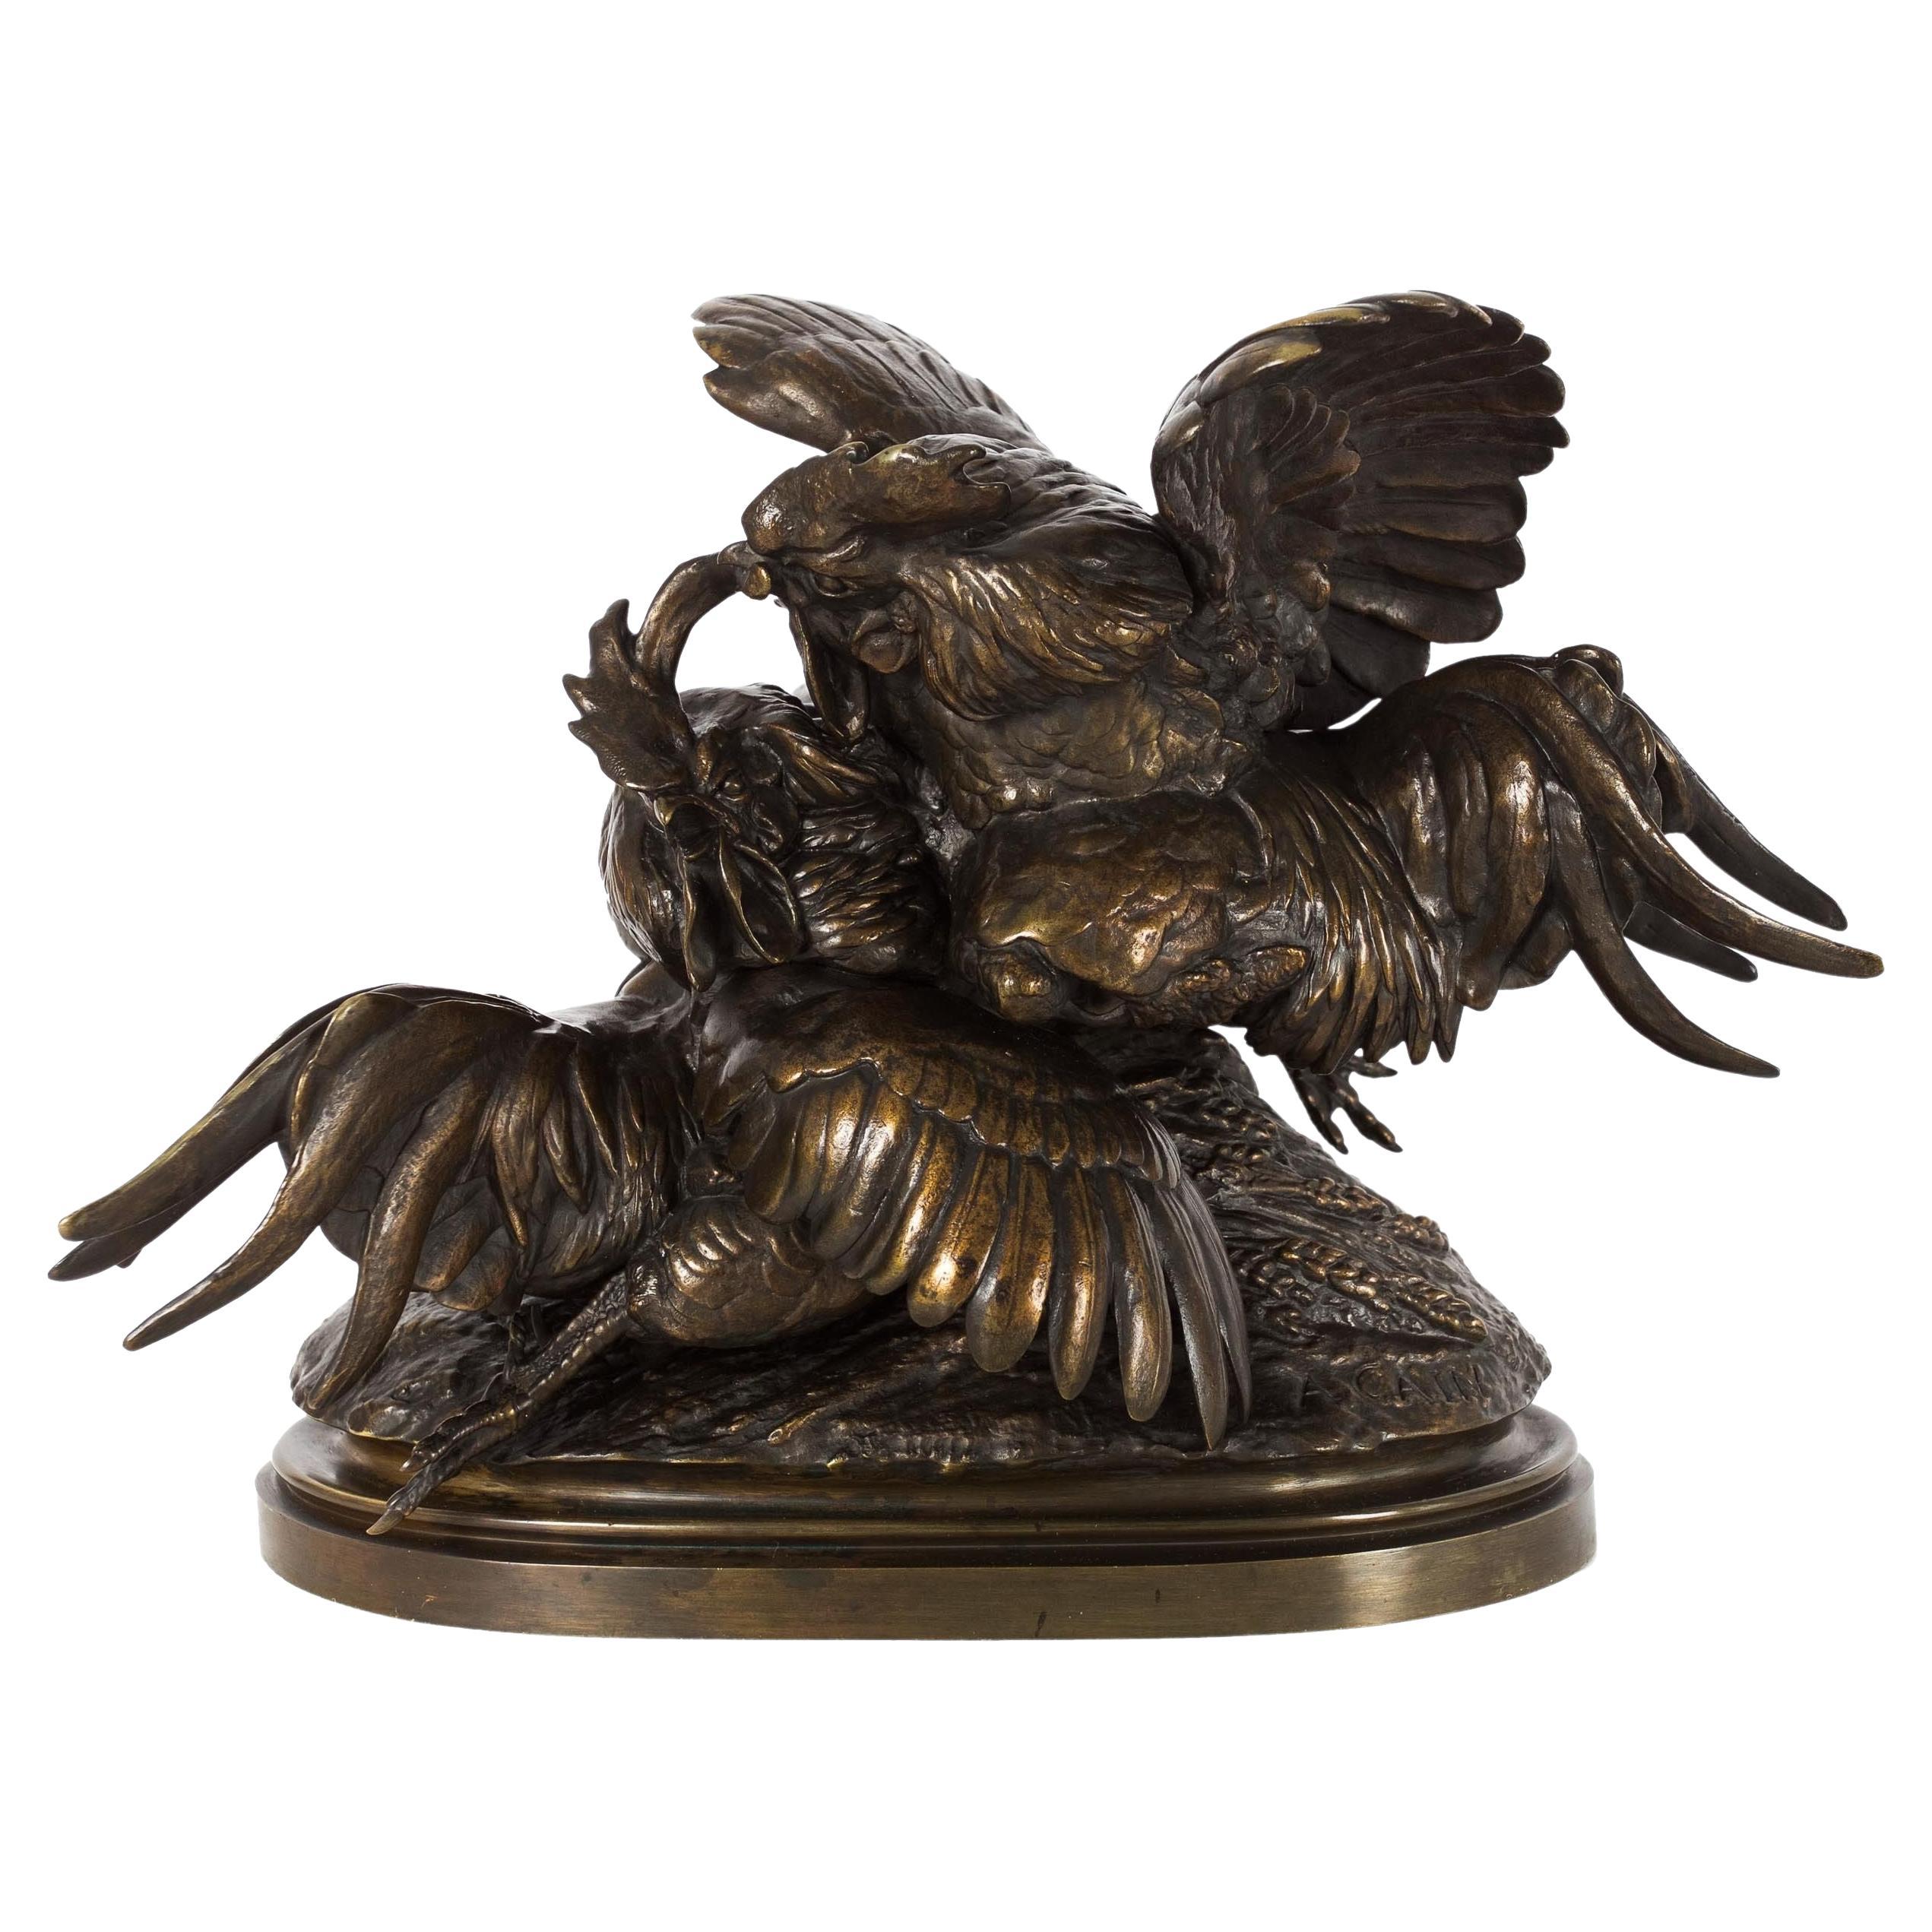 Sculpture française en bronze ancien représentant des coqs combattants par Auguste Cain